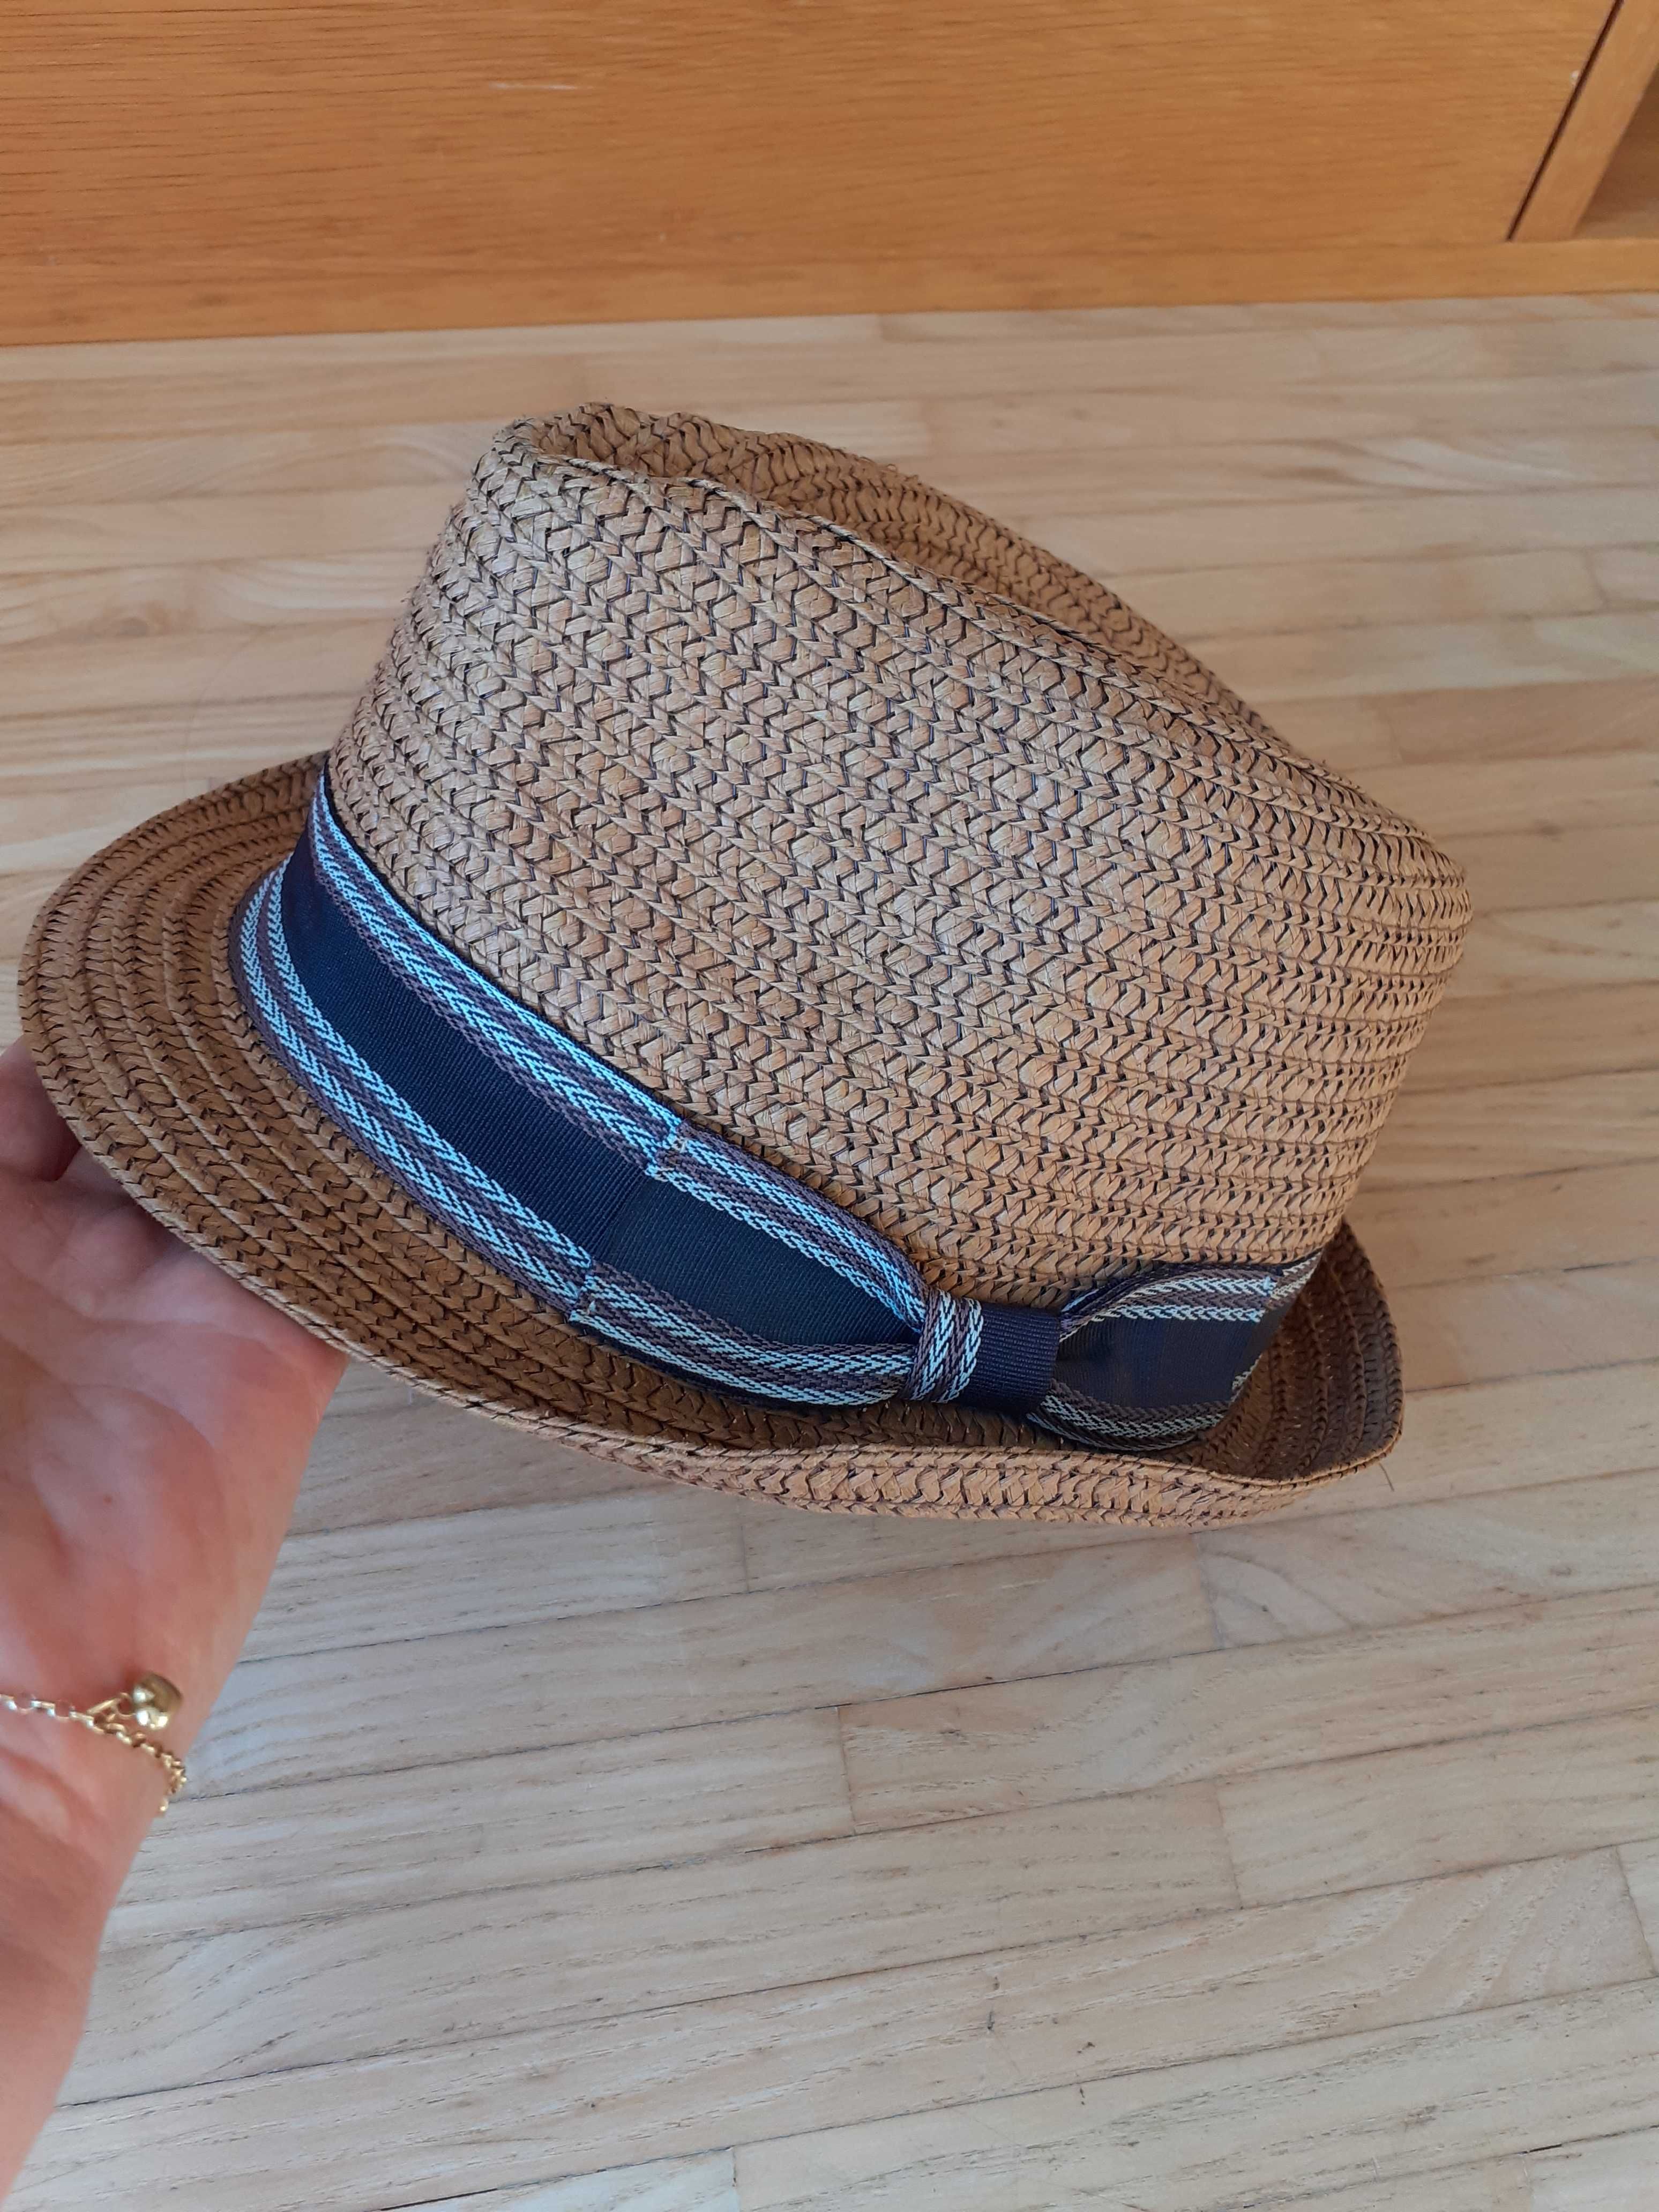 kapelusz letni przeciwsłoneczny, nakrycie głowy dla chłopca 8-10 lat